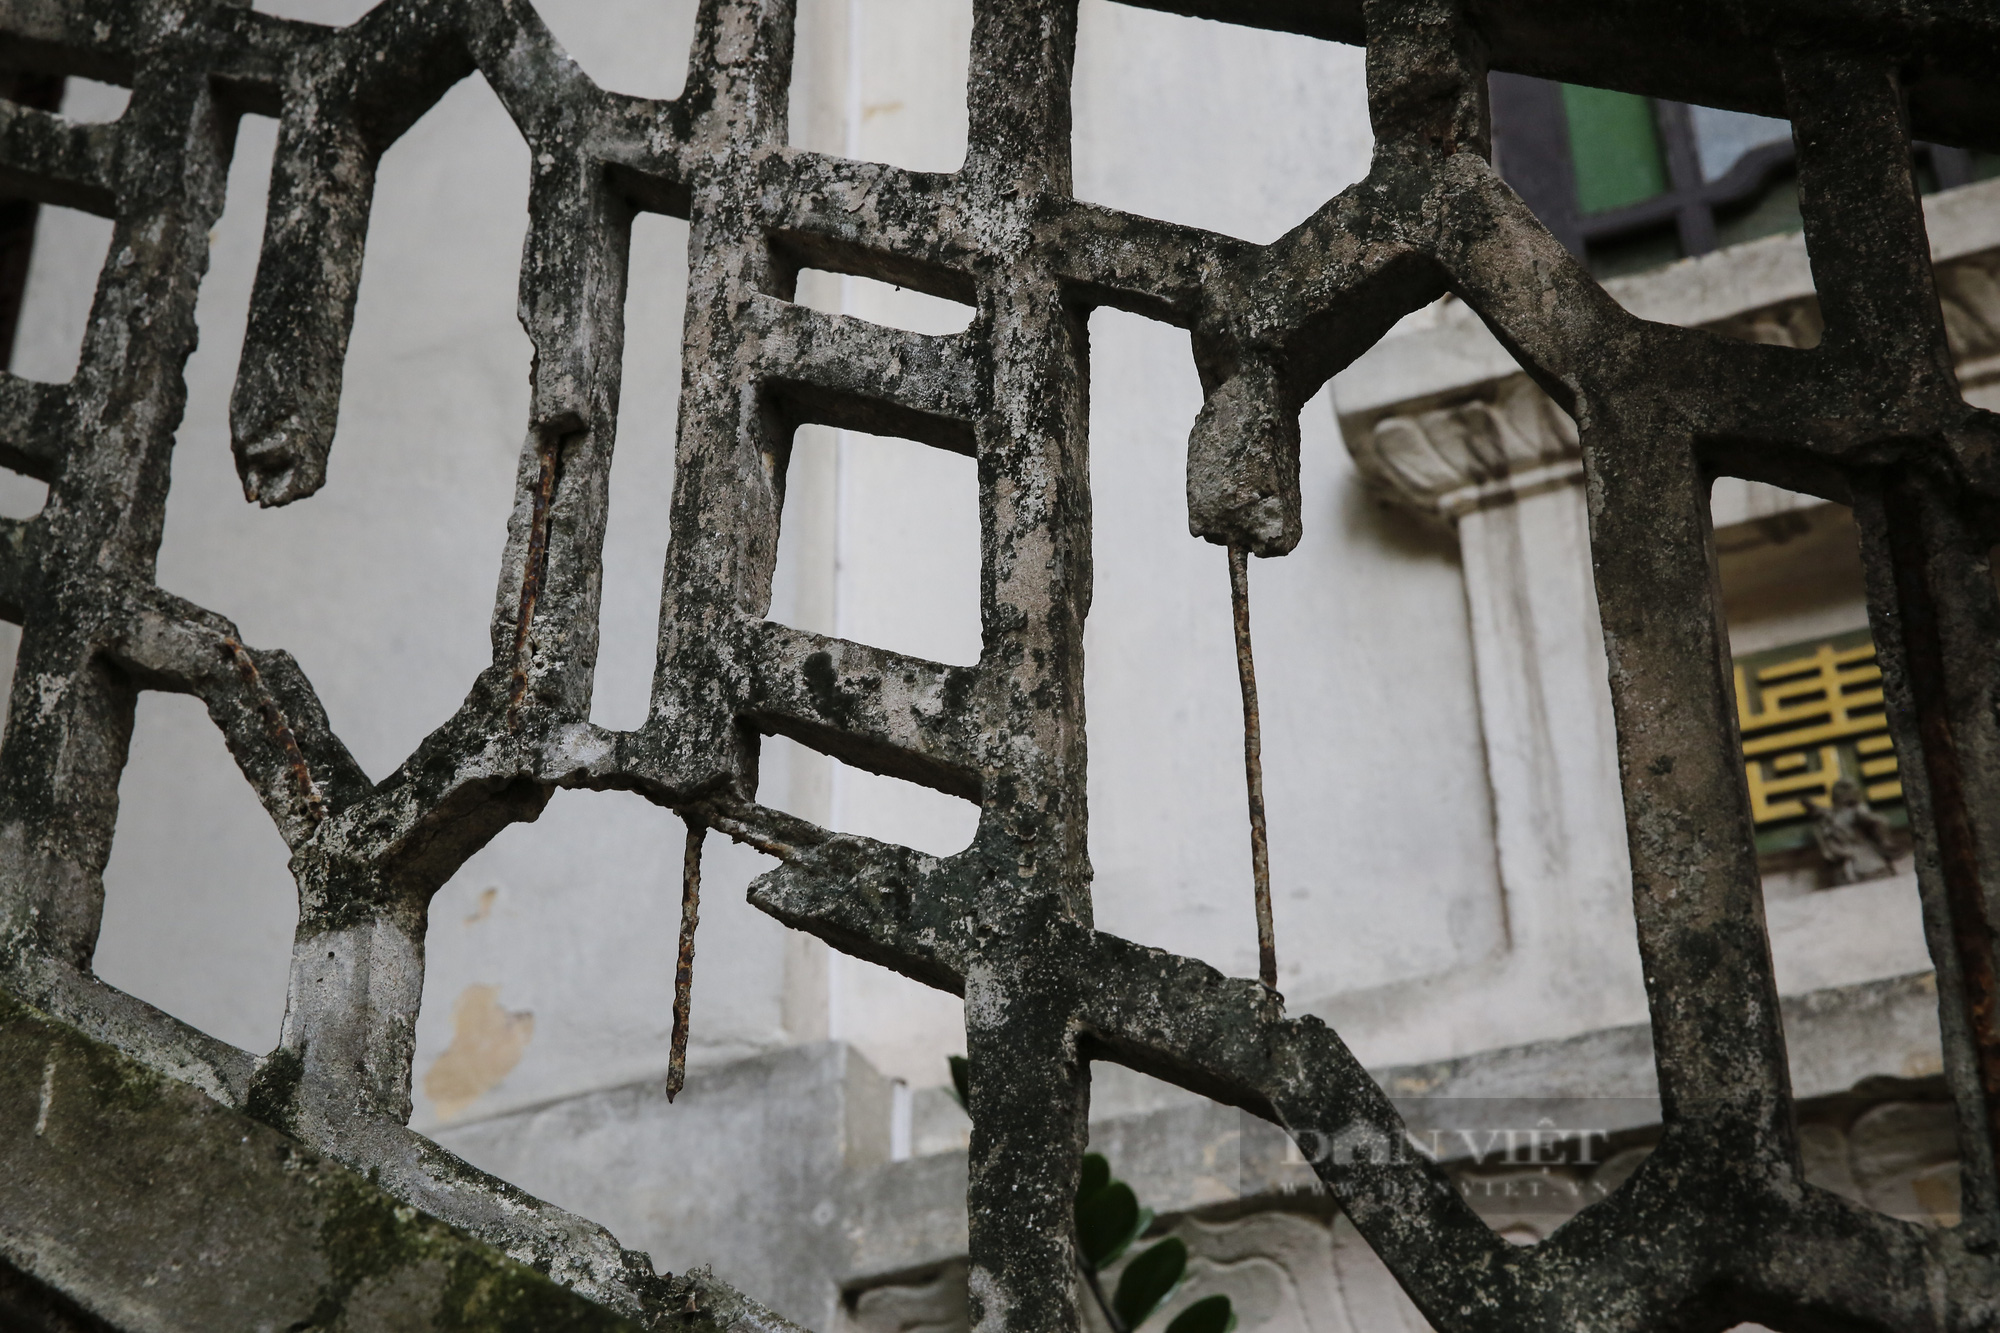 Xót xa nhìn biệt thự 100 tuổi đẹp nức tiếng ở Hà Nội bị xâm lấn nghiêm trọng  - Ảnh 8.